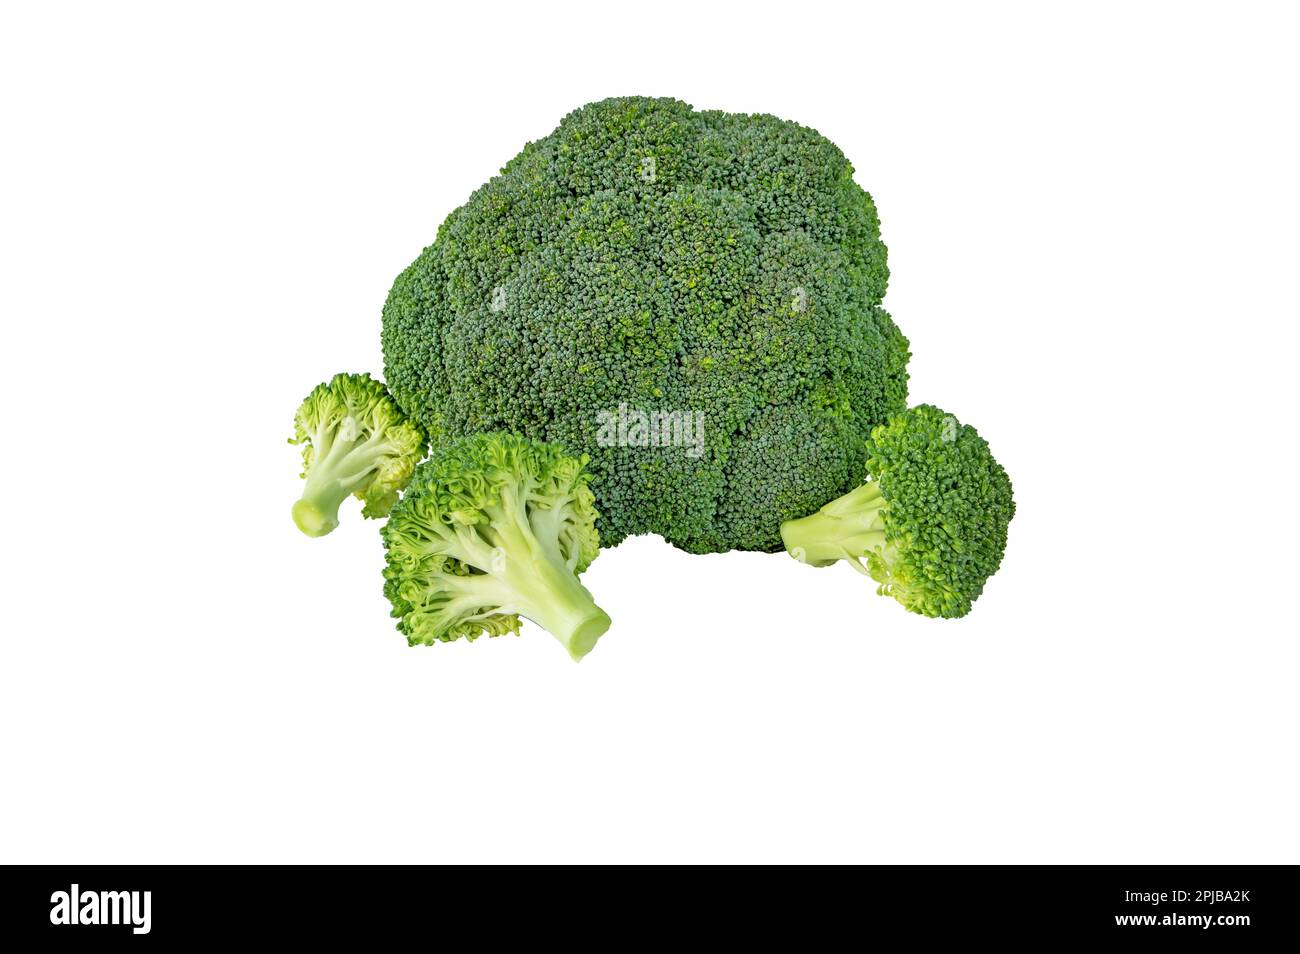 Brokkoli-Kohlblütenkopf und separate, auf weiß isolierte Blüten. Brassica oleracea var. italica-Gemüse. Essbare grüne Pflanze Stockfoto